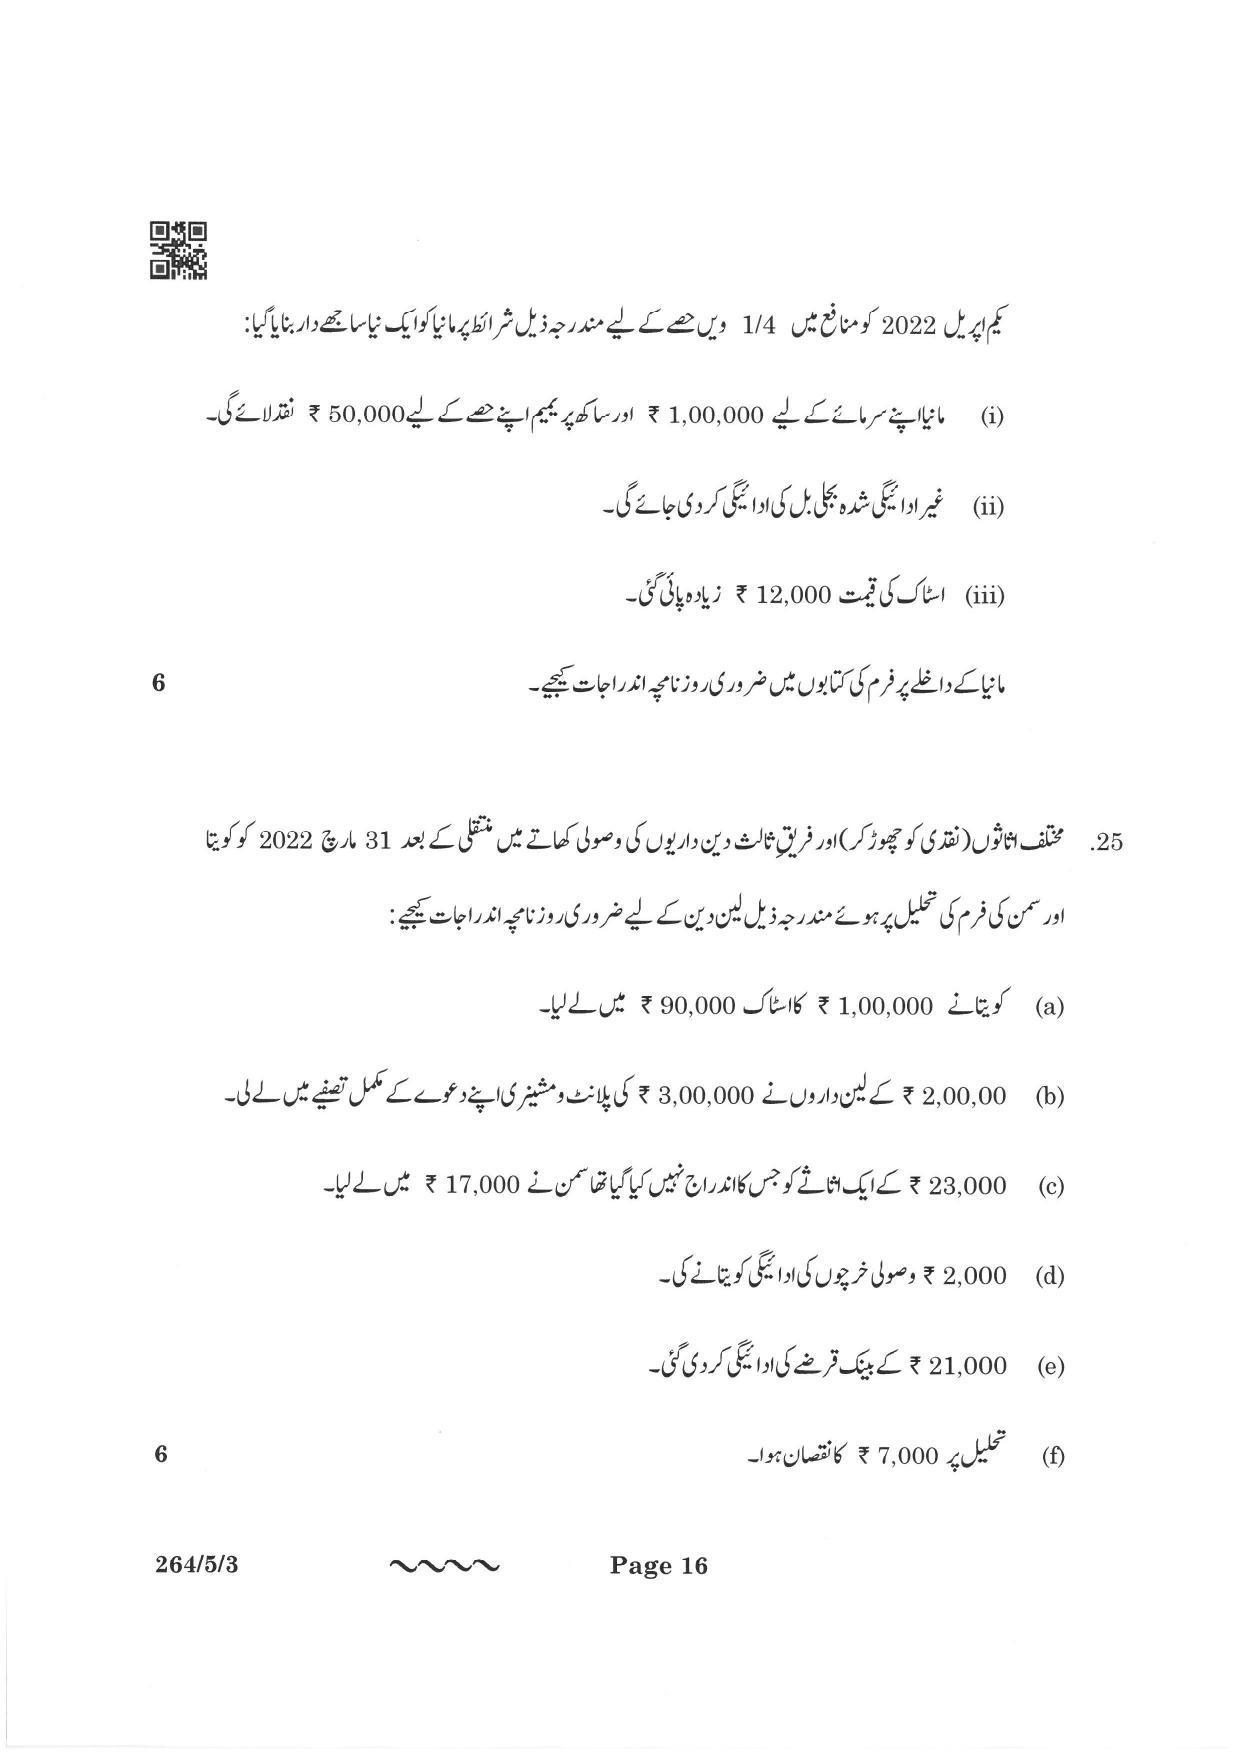 CBSE Class 12 264-5-3 Accountancy Urdu Version 2023 Question Paper - Page 16